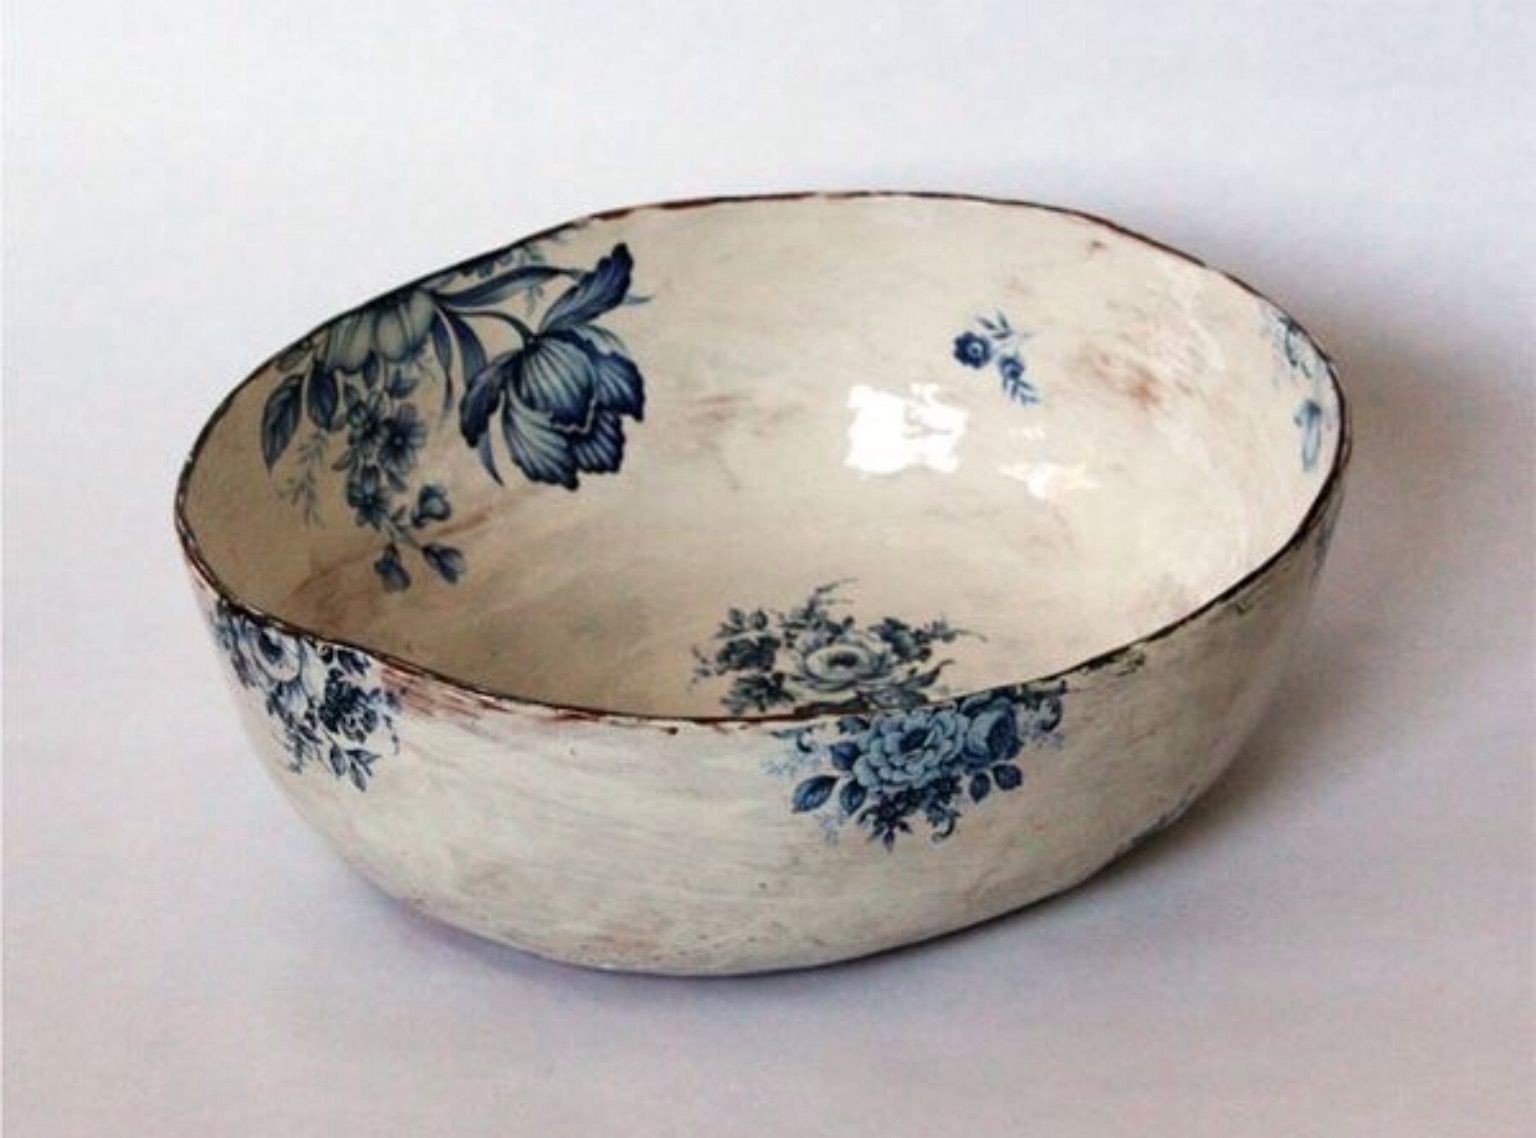 Handmade pottery dinnerware